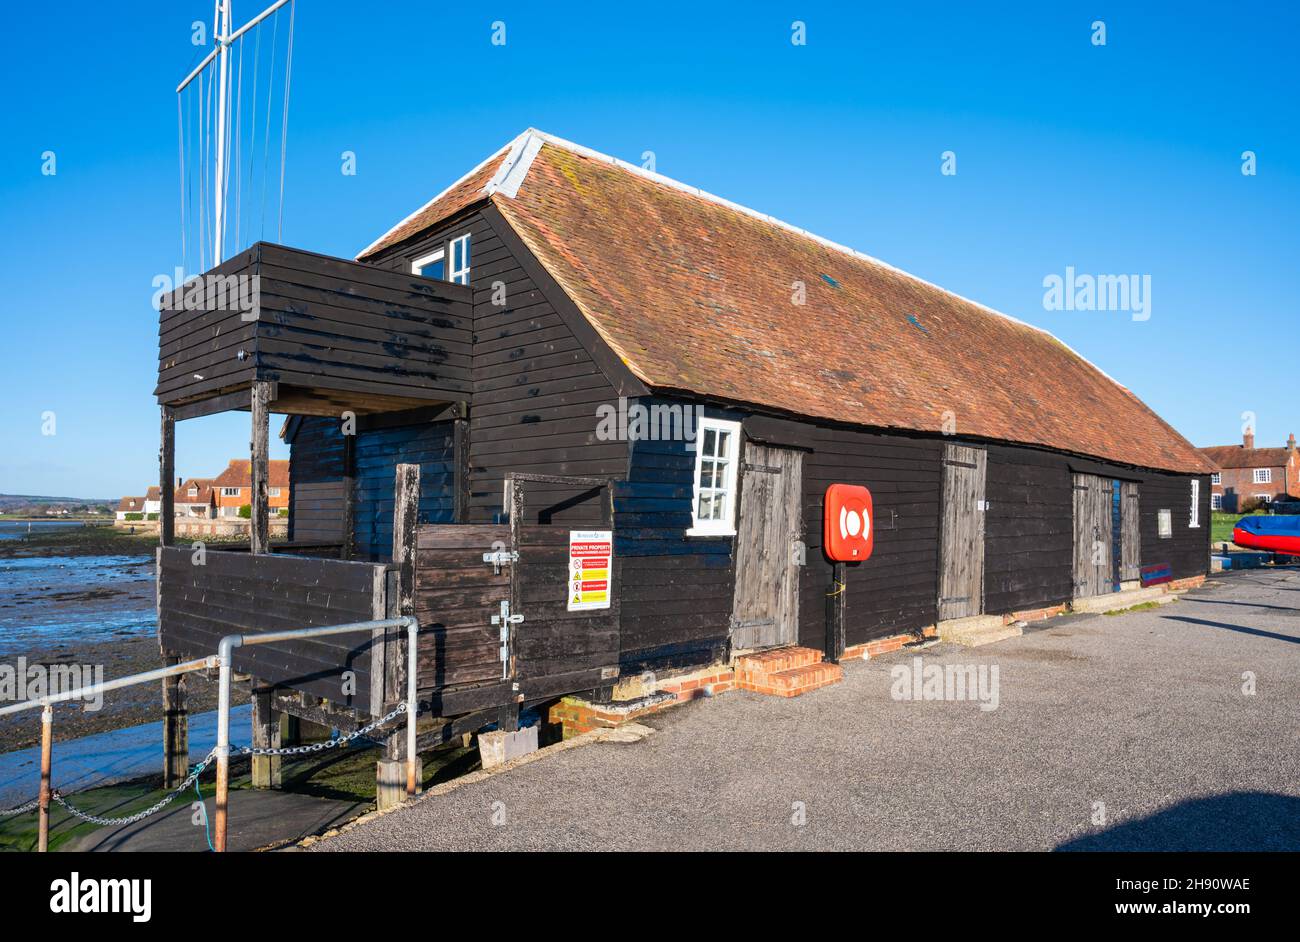 Raptackle, ehemals Bosham Sea School, ein denkmalgeschütztes Gebäude aus dem 18th. Jahrhundert im Bosham Sailing Club in Bosham Quay, West Sussex, England, Großbritannien Stockfoto